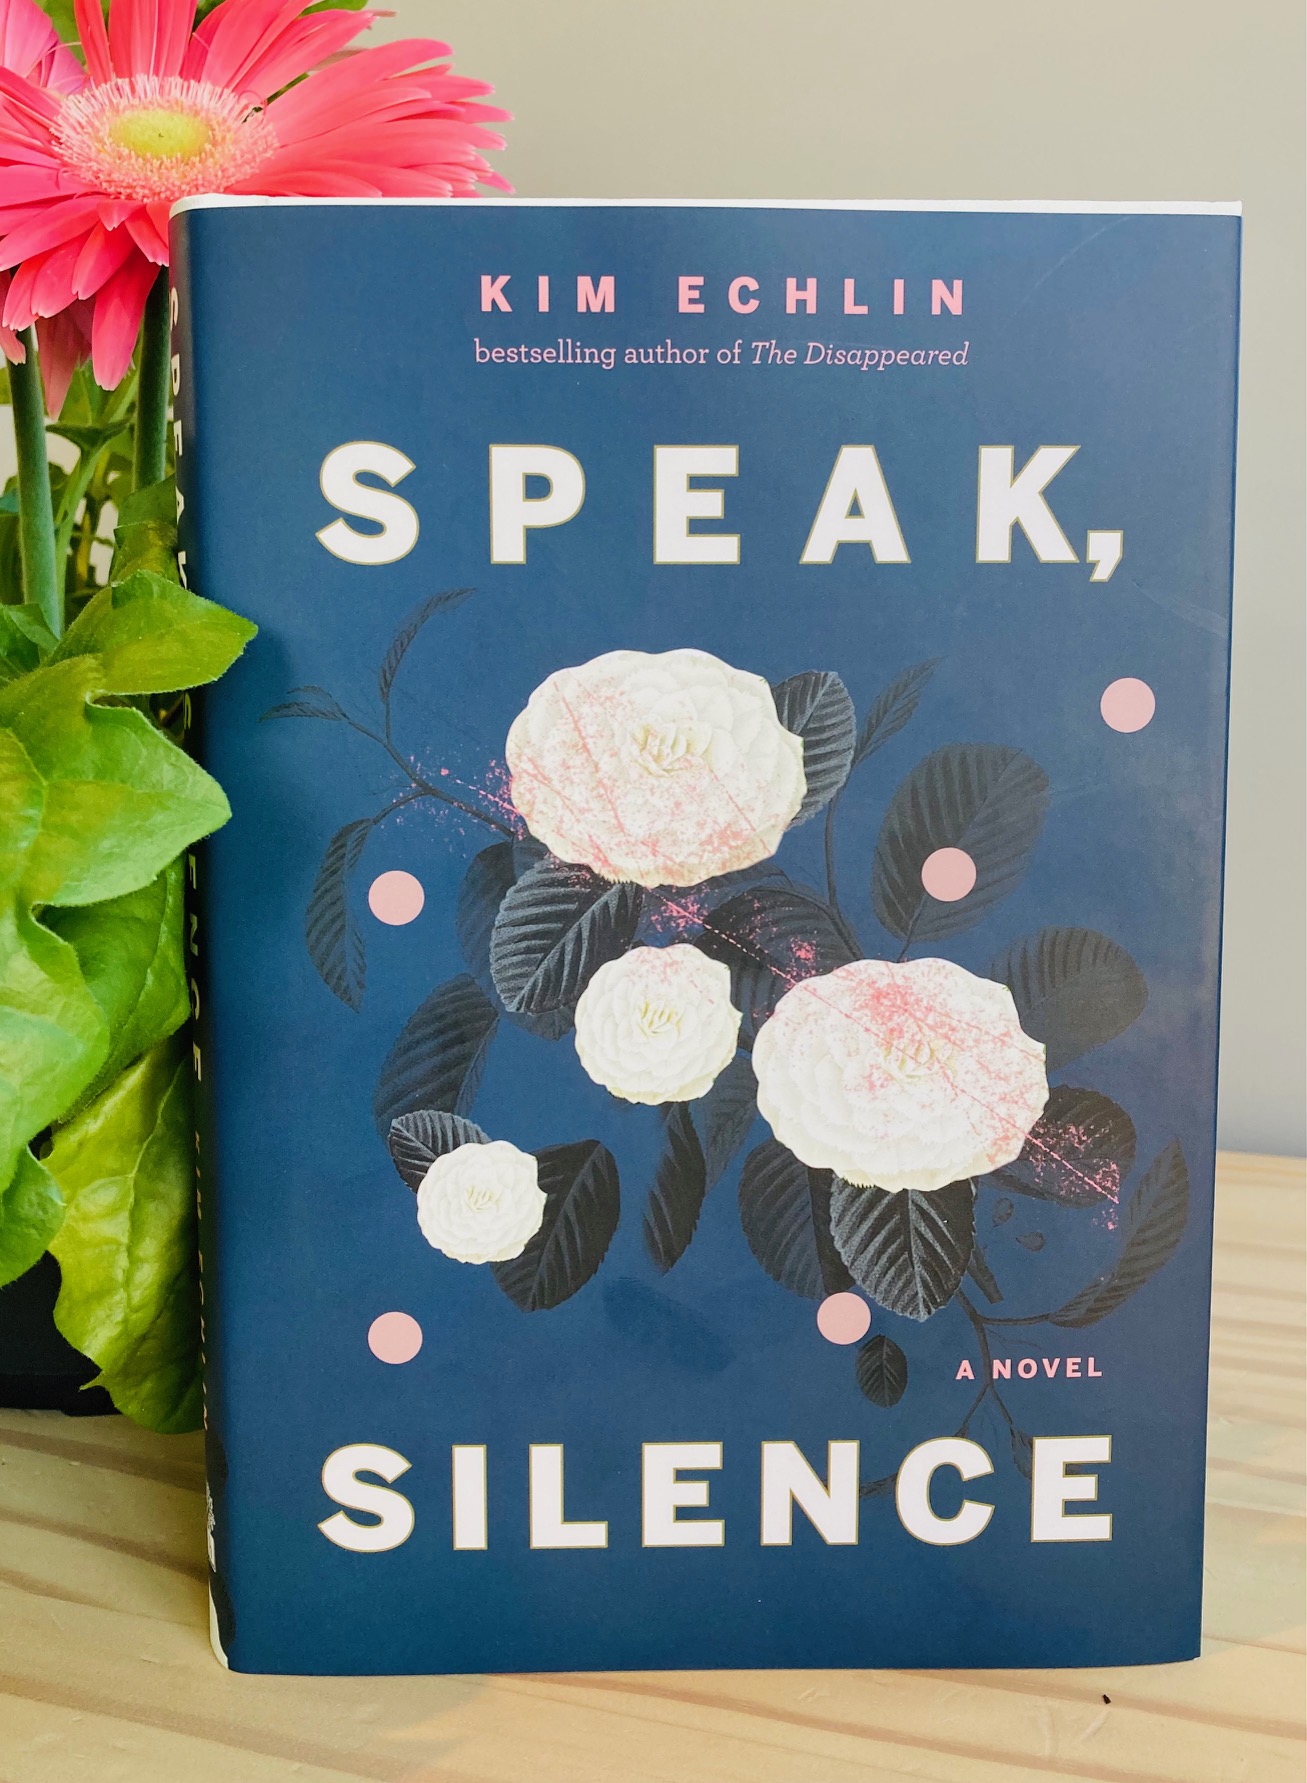 cover image of Speak Silence by Kim Echlin